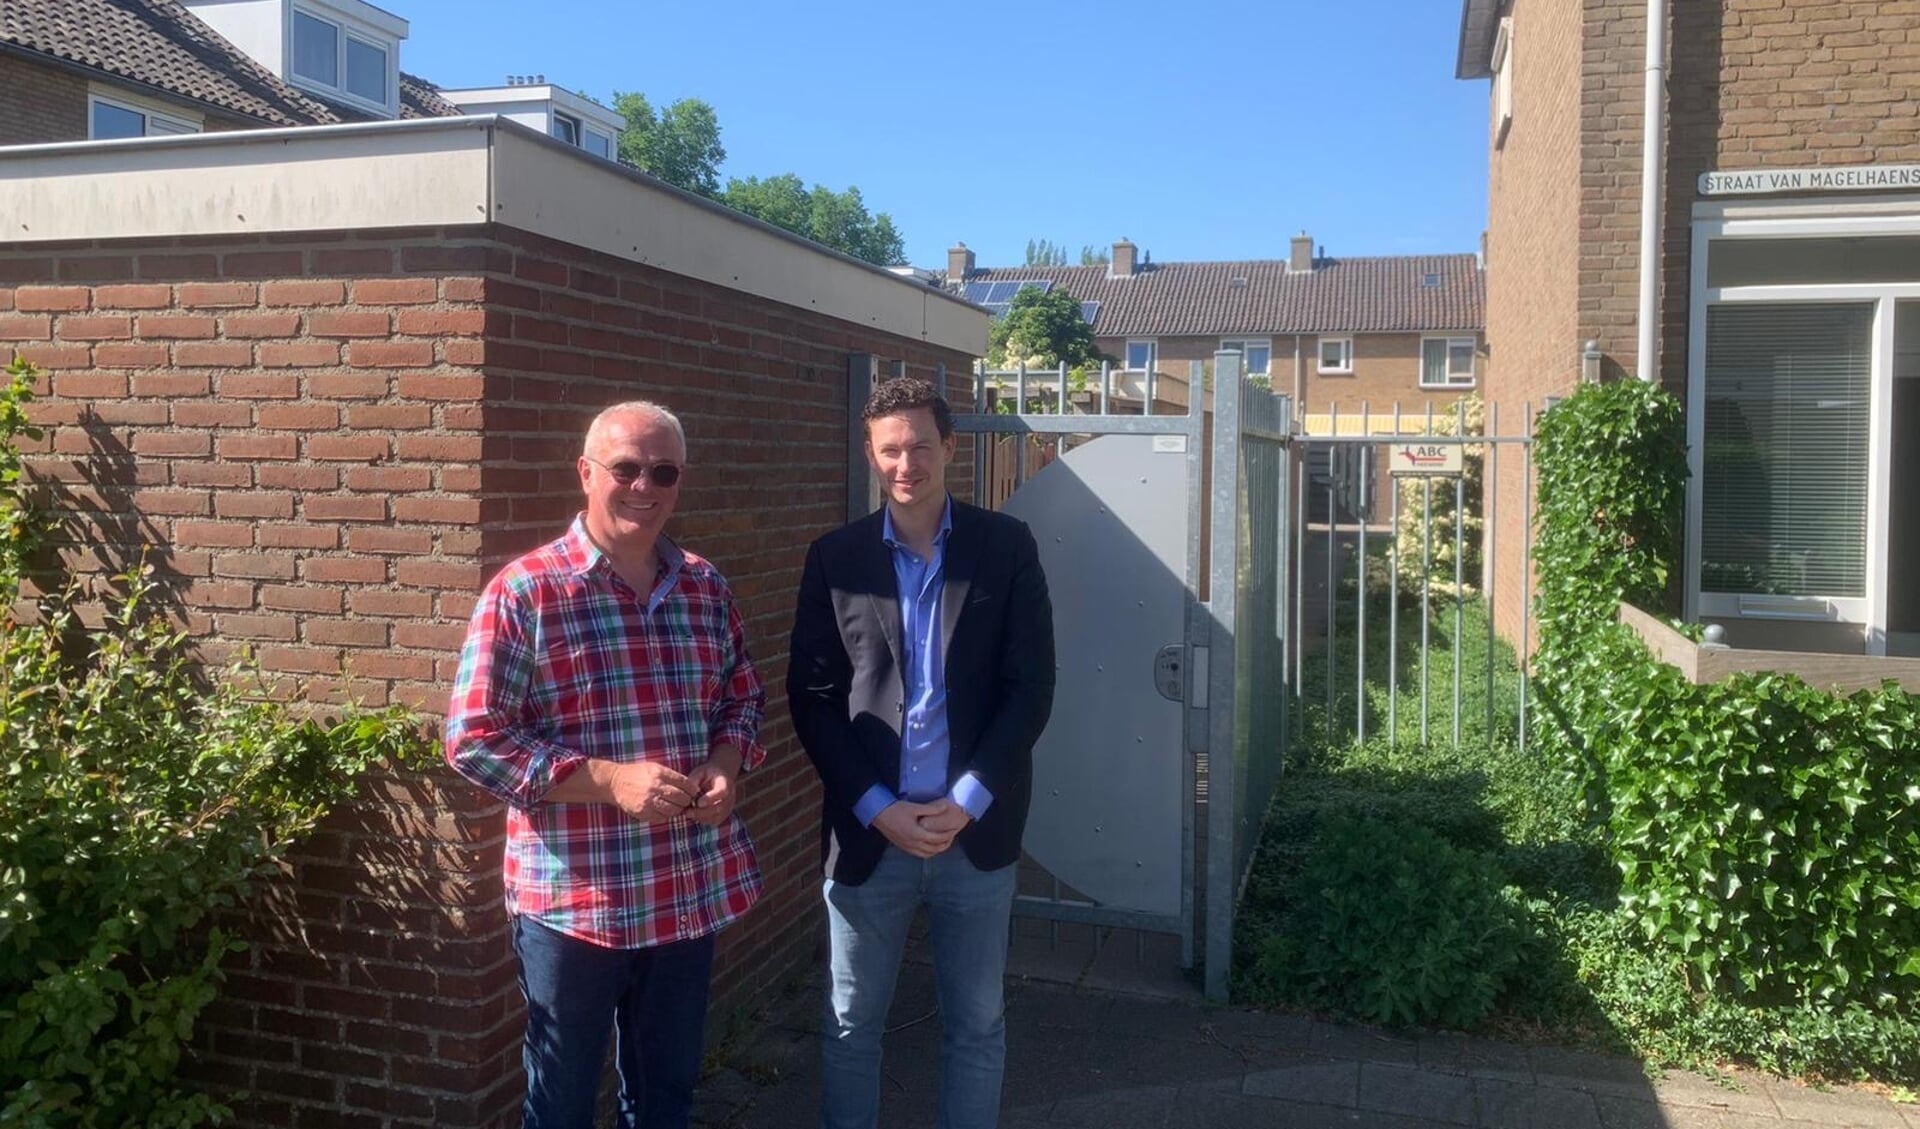 VVD-raadslid Benjamin Smalhout (rechts) bekijkt samen met buurtbewoner Kees het project in Kostverloren.